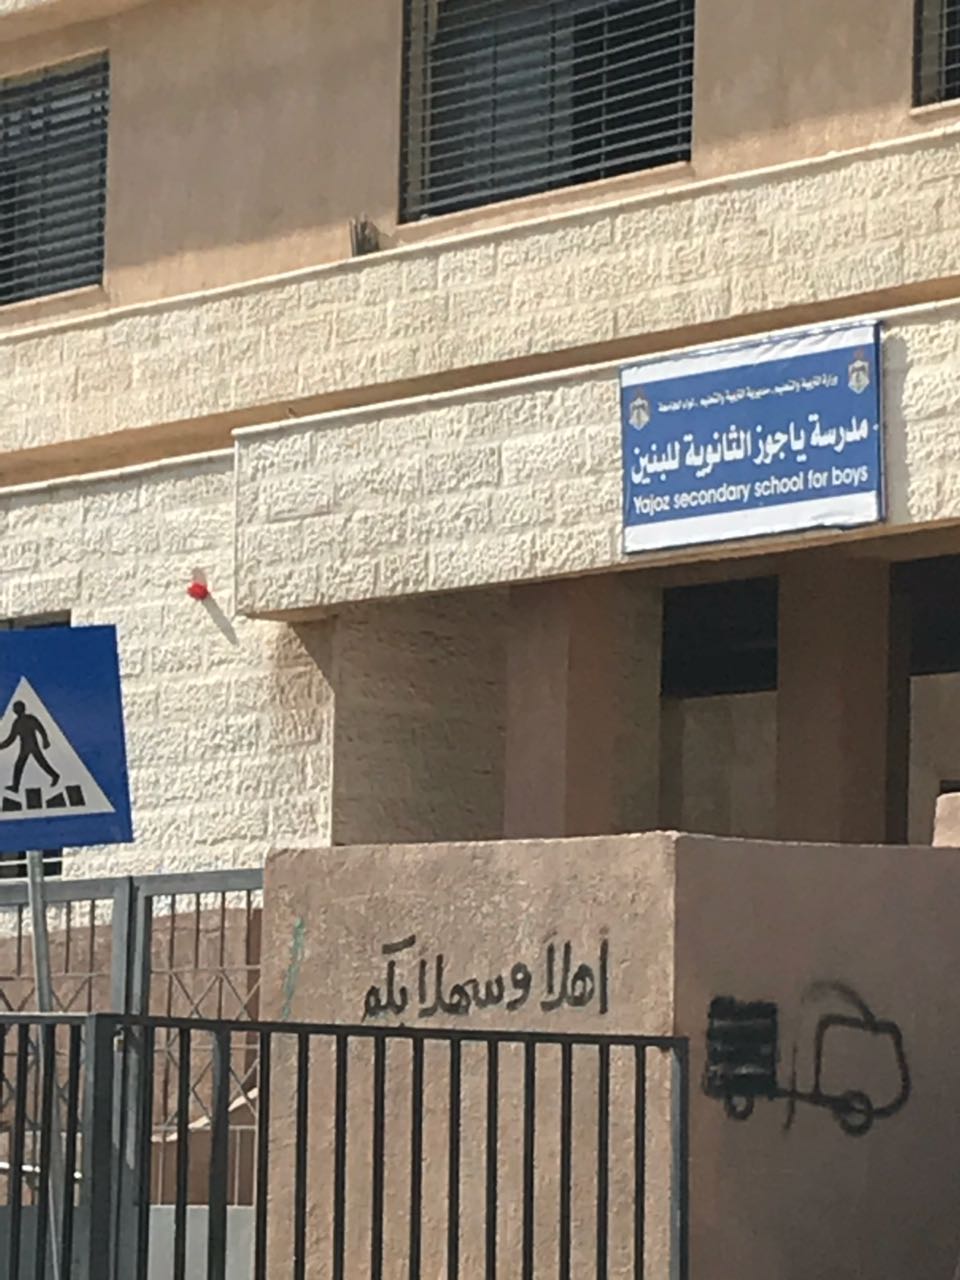 أهالي الكوم شفا بدران يطالبون وزير التربية بتغير إسم مدرسة "ياجوز"